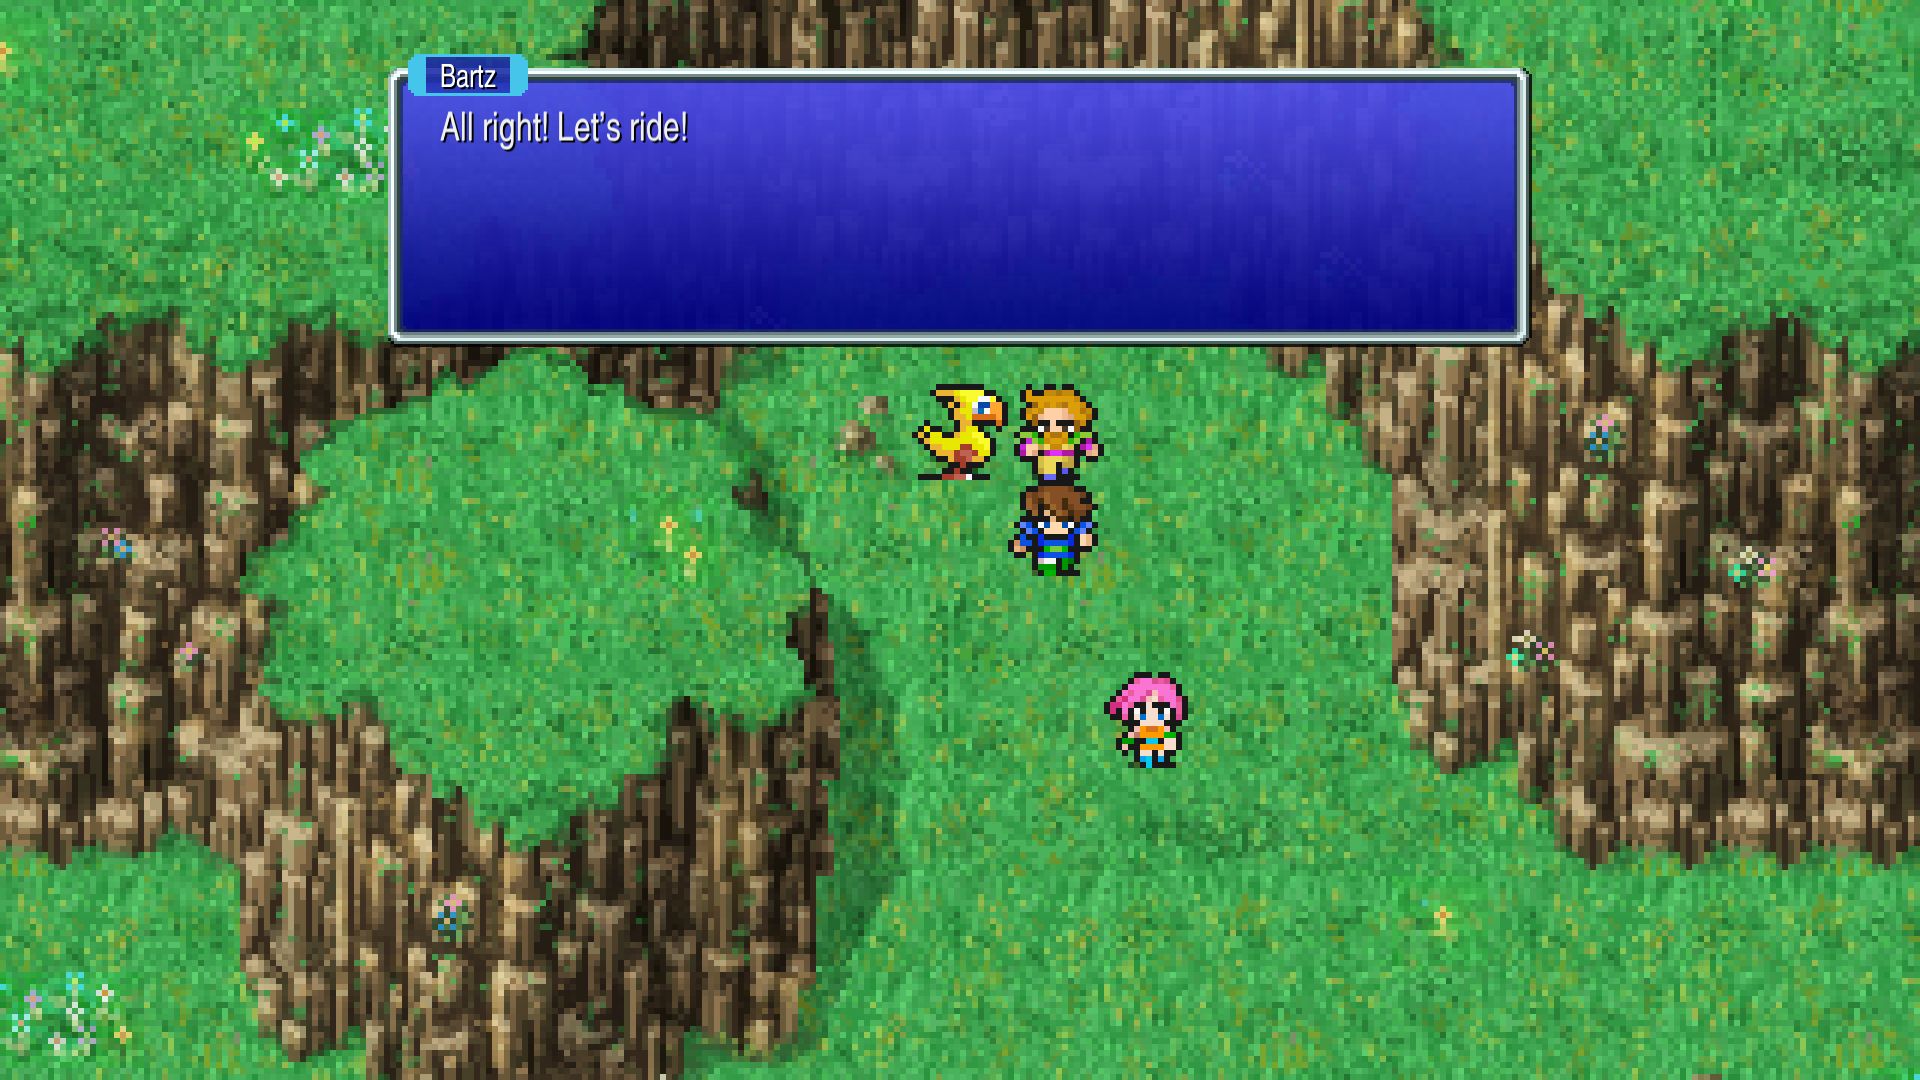 Tangkapan layar gameplay yang menunjukkan pesta Final Fantasy V dengan chocobo di peta dunia